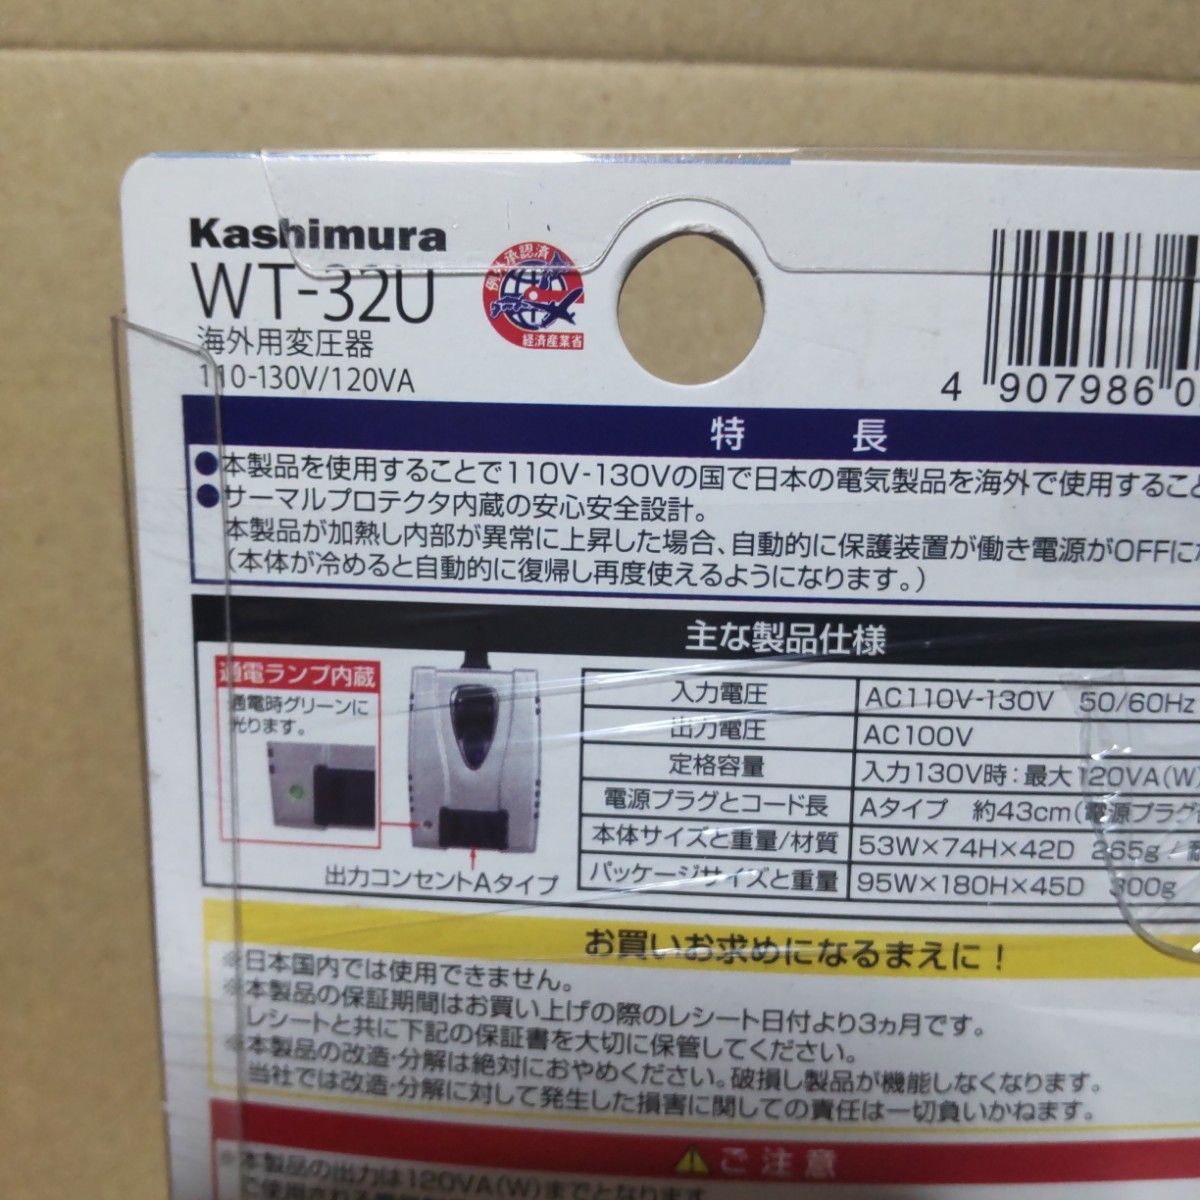 カシムラ KASHIMURA WT-32U [海外用変圧器 110-130V/120VA]